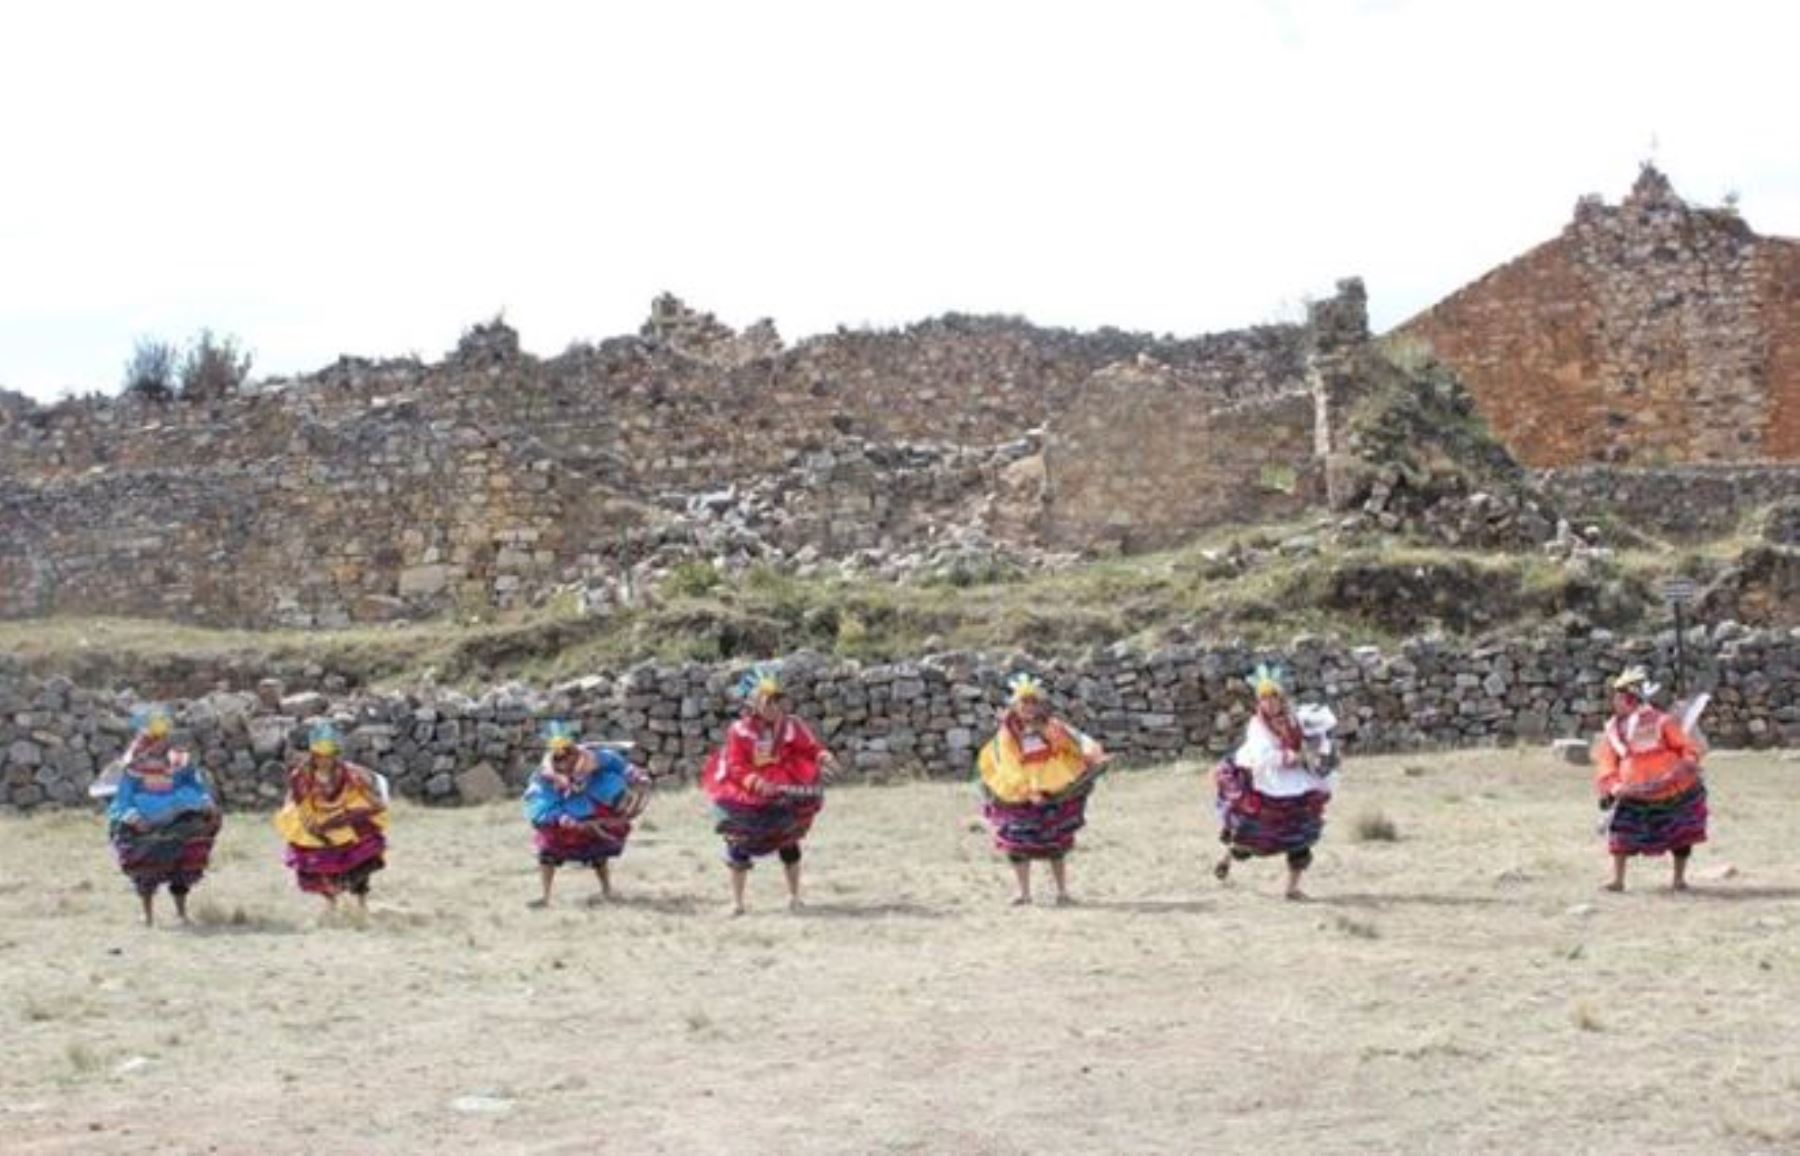 La danza Los Incas de la provincia de Sánchez Carrión, región La Libertad, fue declarada Patrimonio Cultural de la Nación.